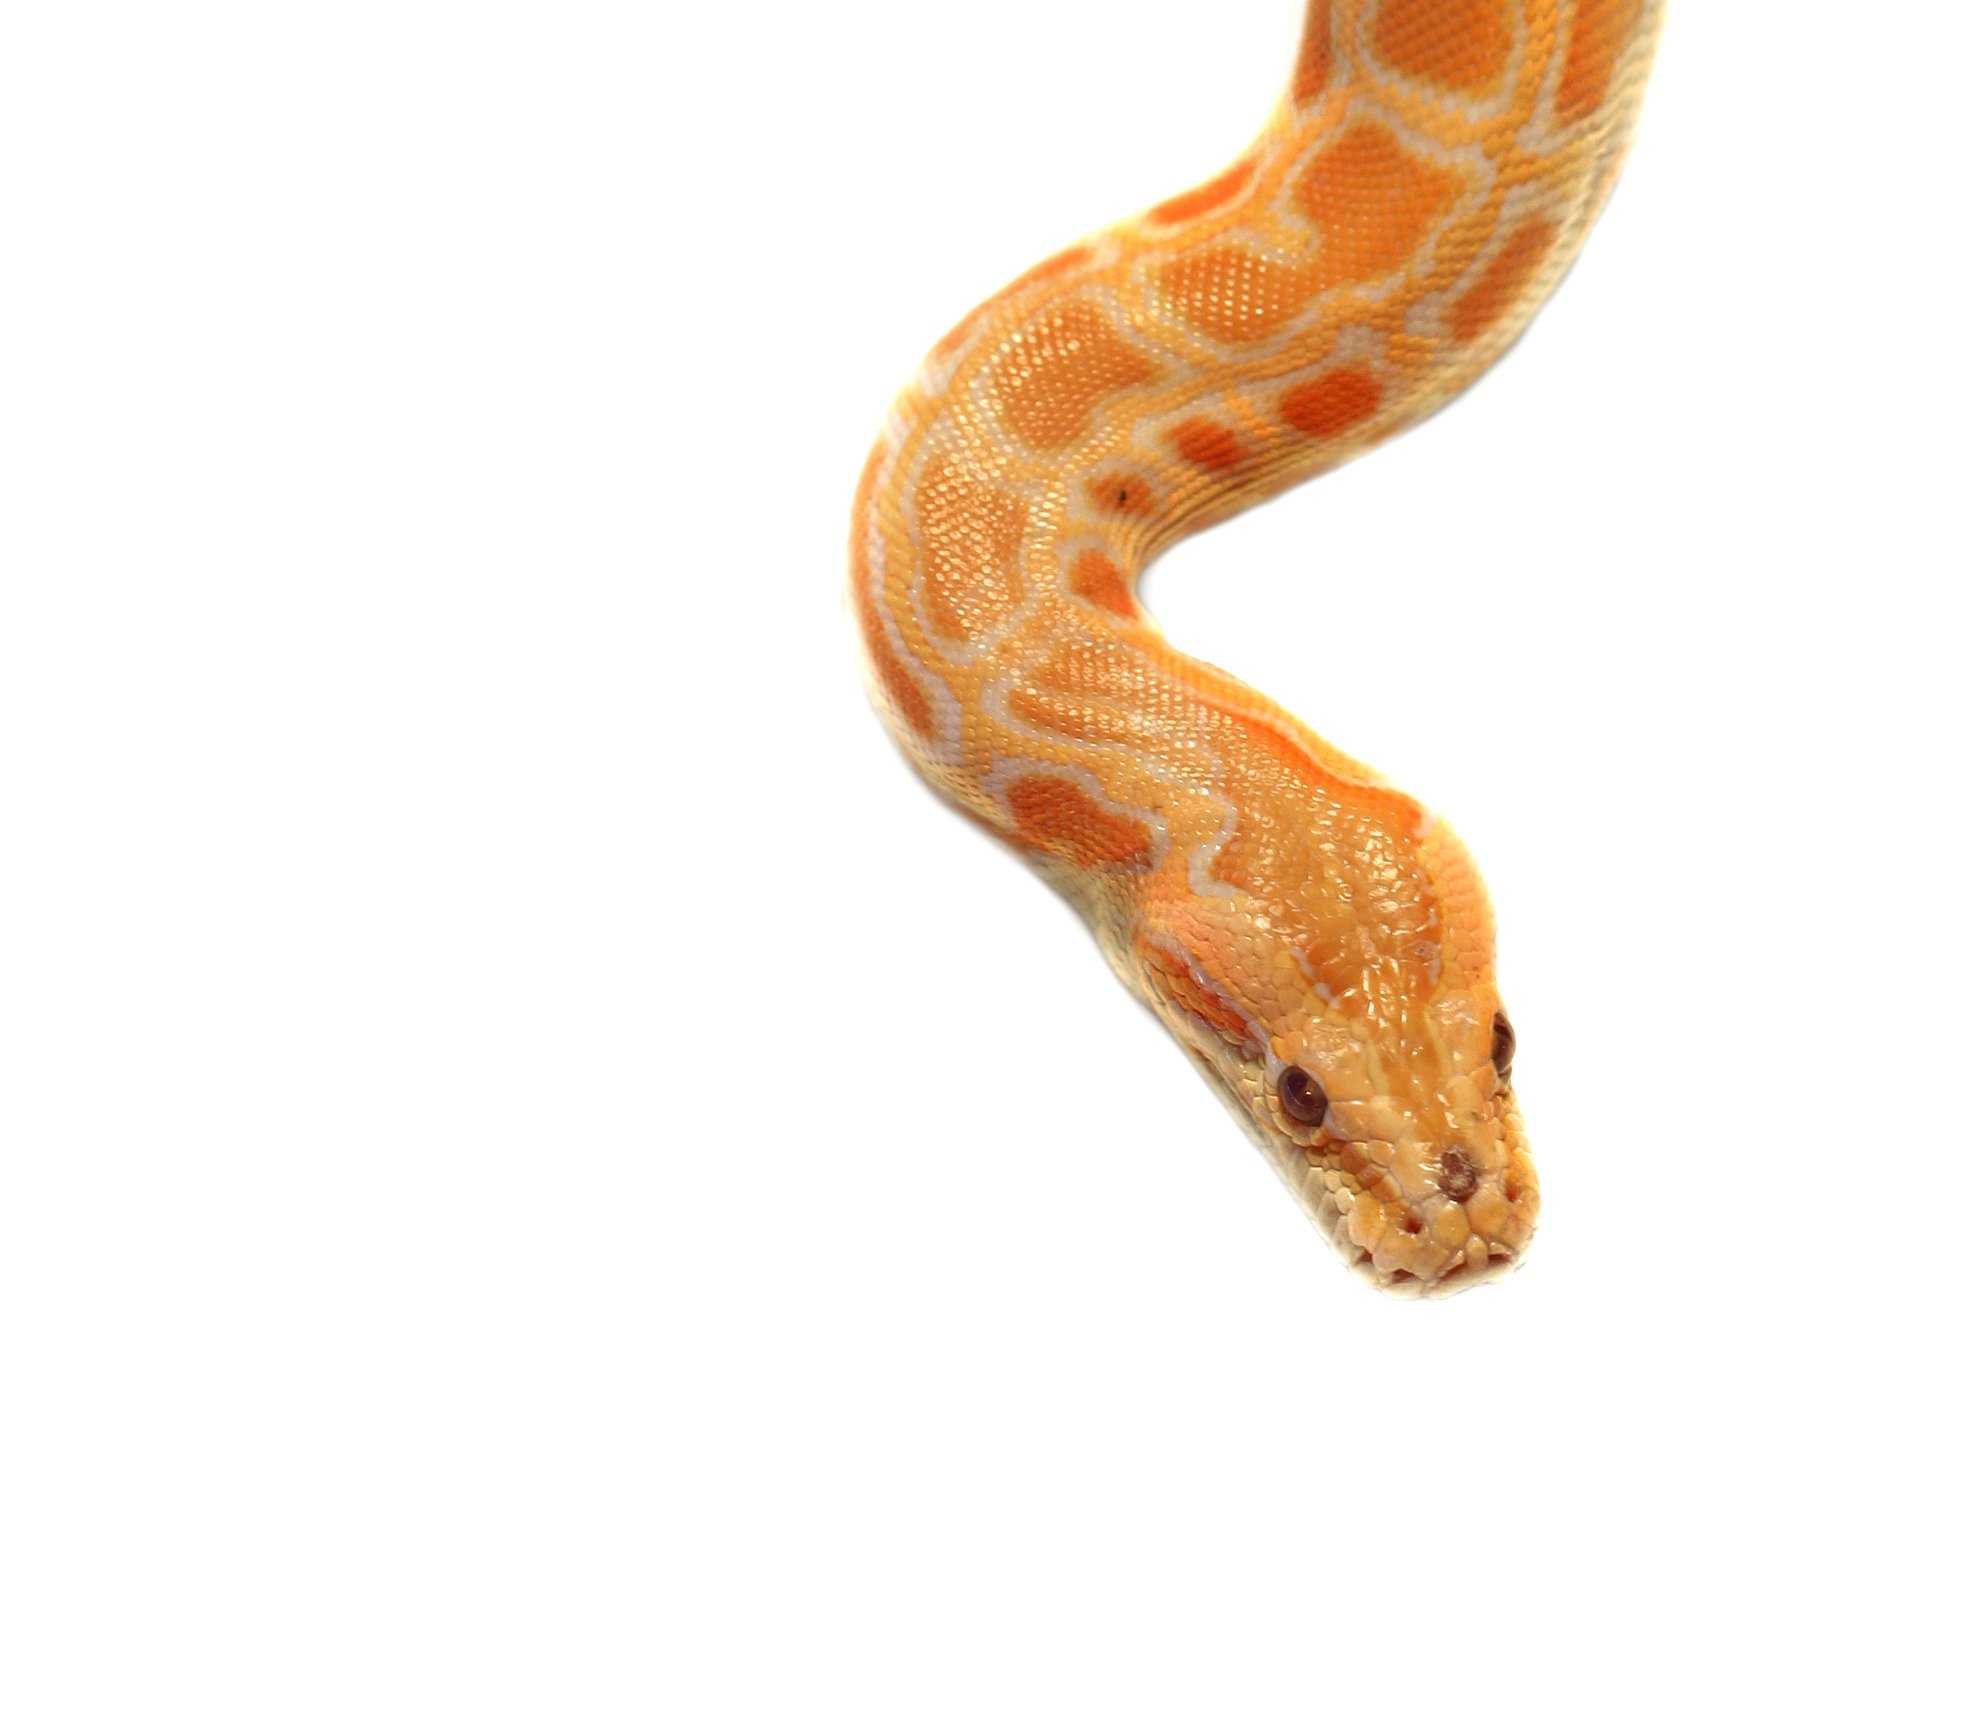 choosing your pet snake